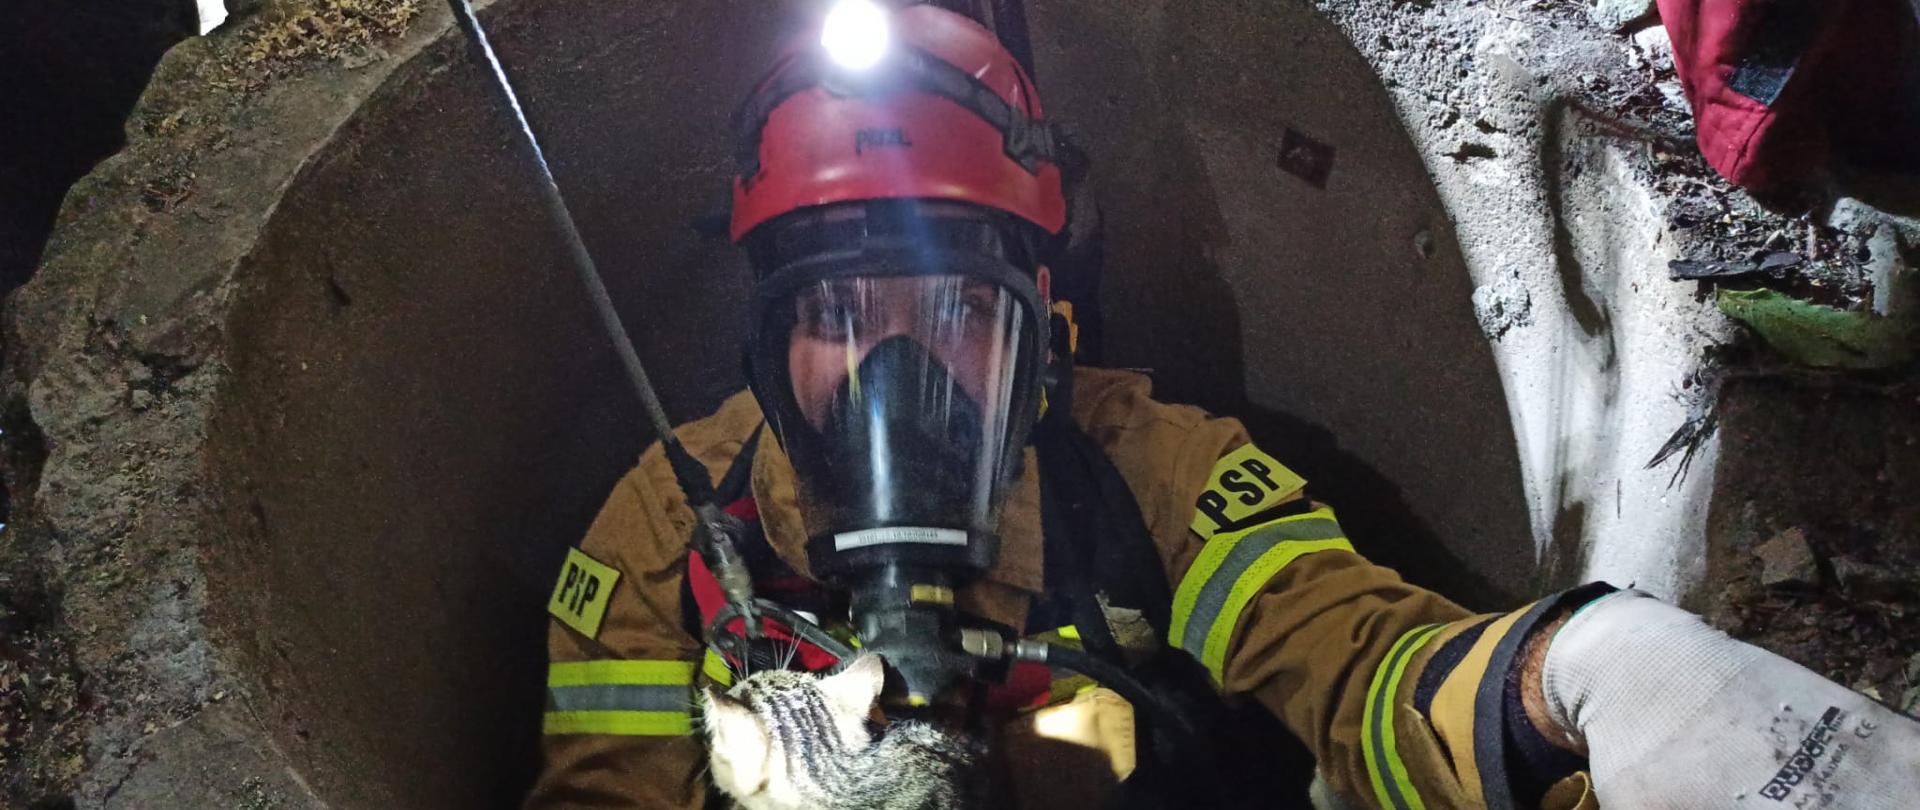 Zdjęcie przedstawia strażaka, który trzyma w ręce kota, którego wcześniej ewakuował ze studni z głębokości ok. 16 m. 